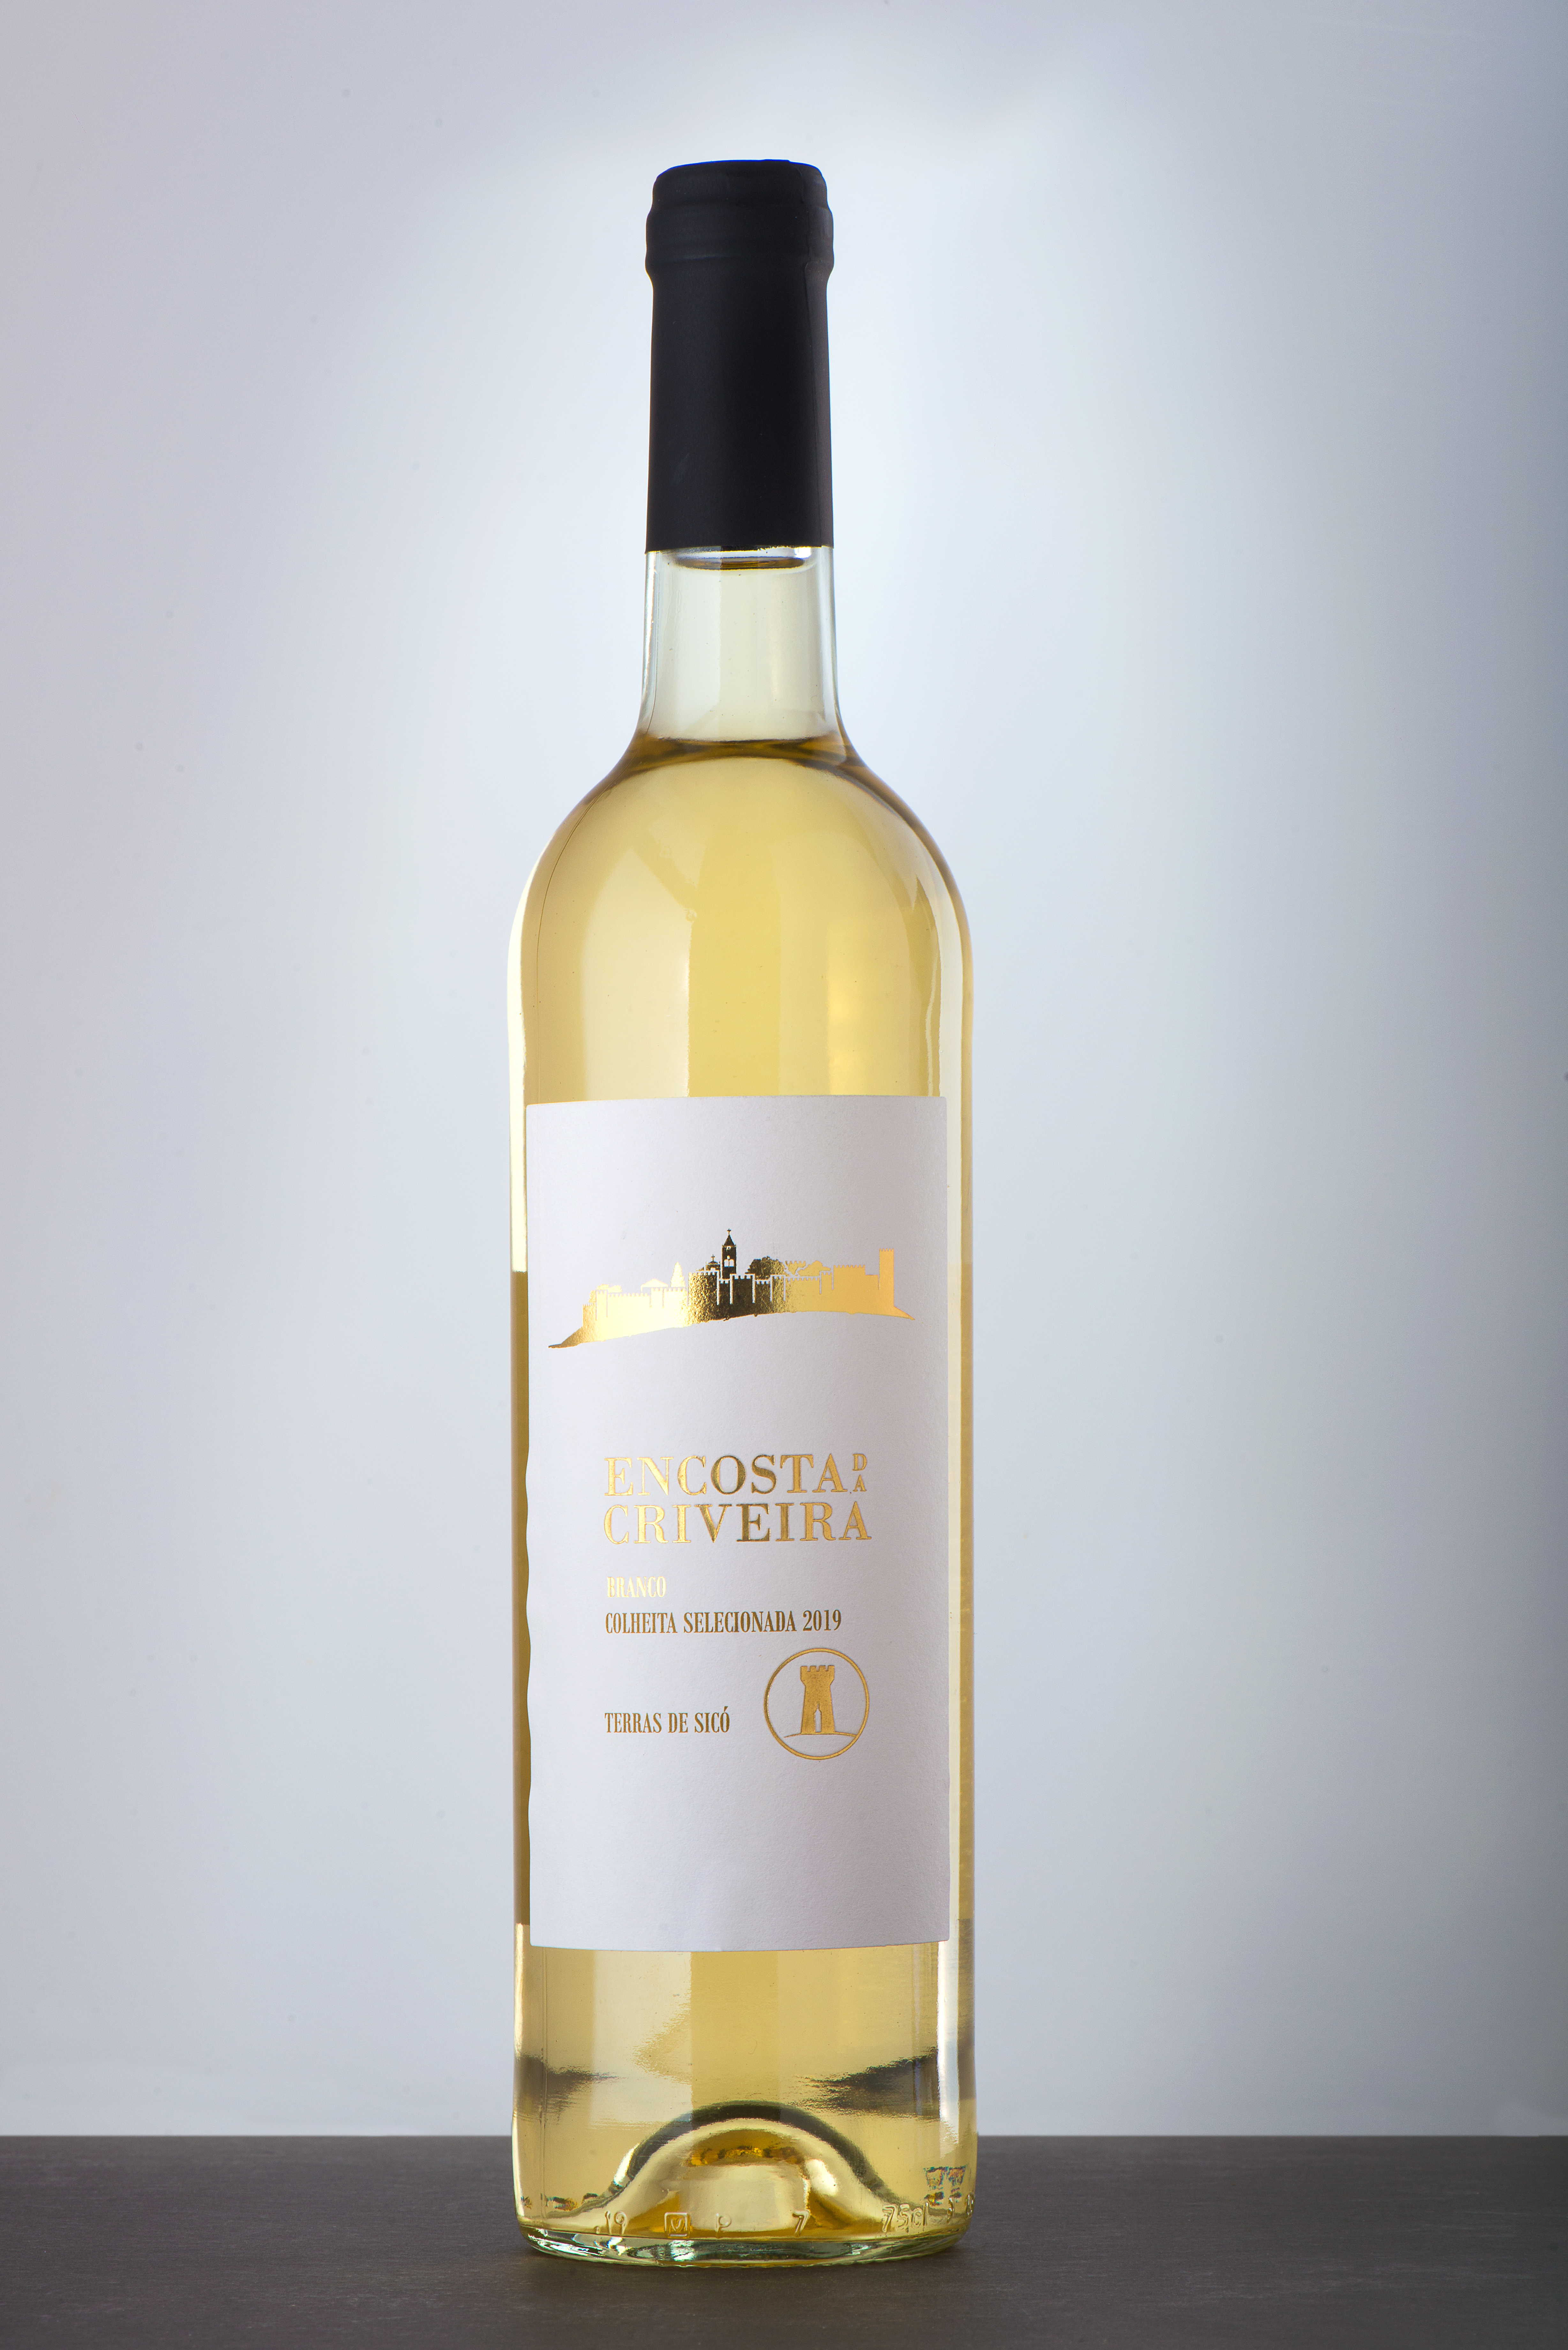 Vinho Branco Encosta da Criveira - Reserva / Ouro